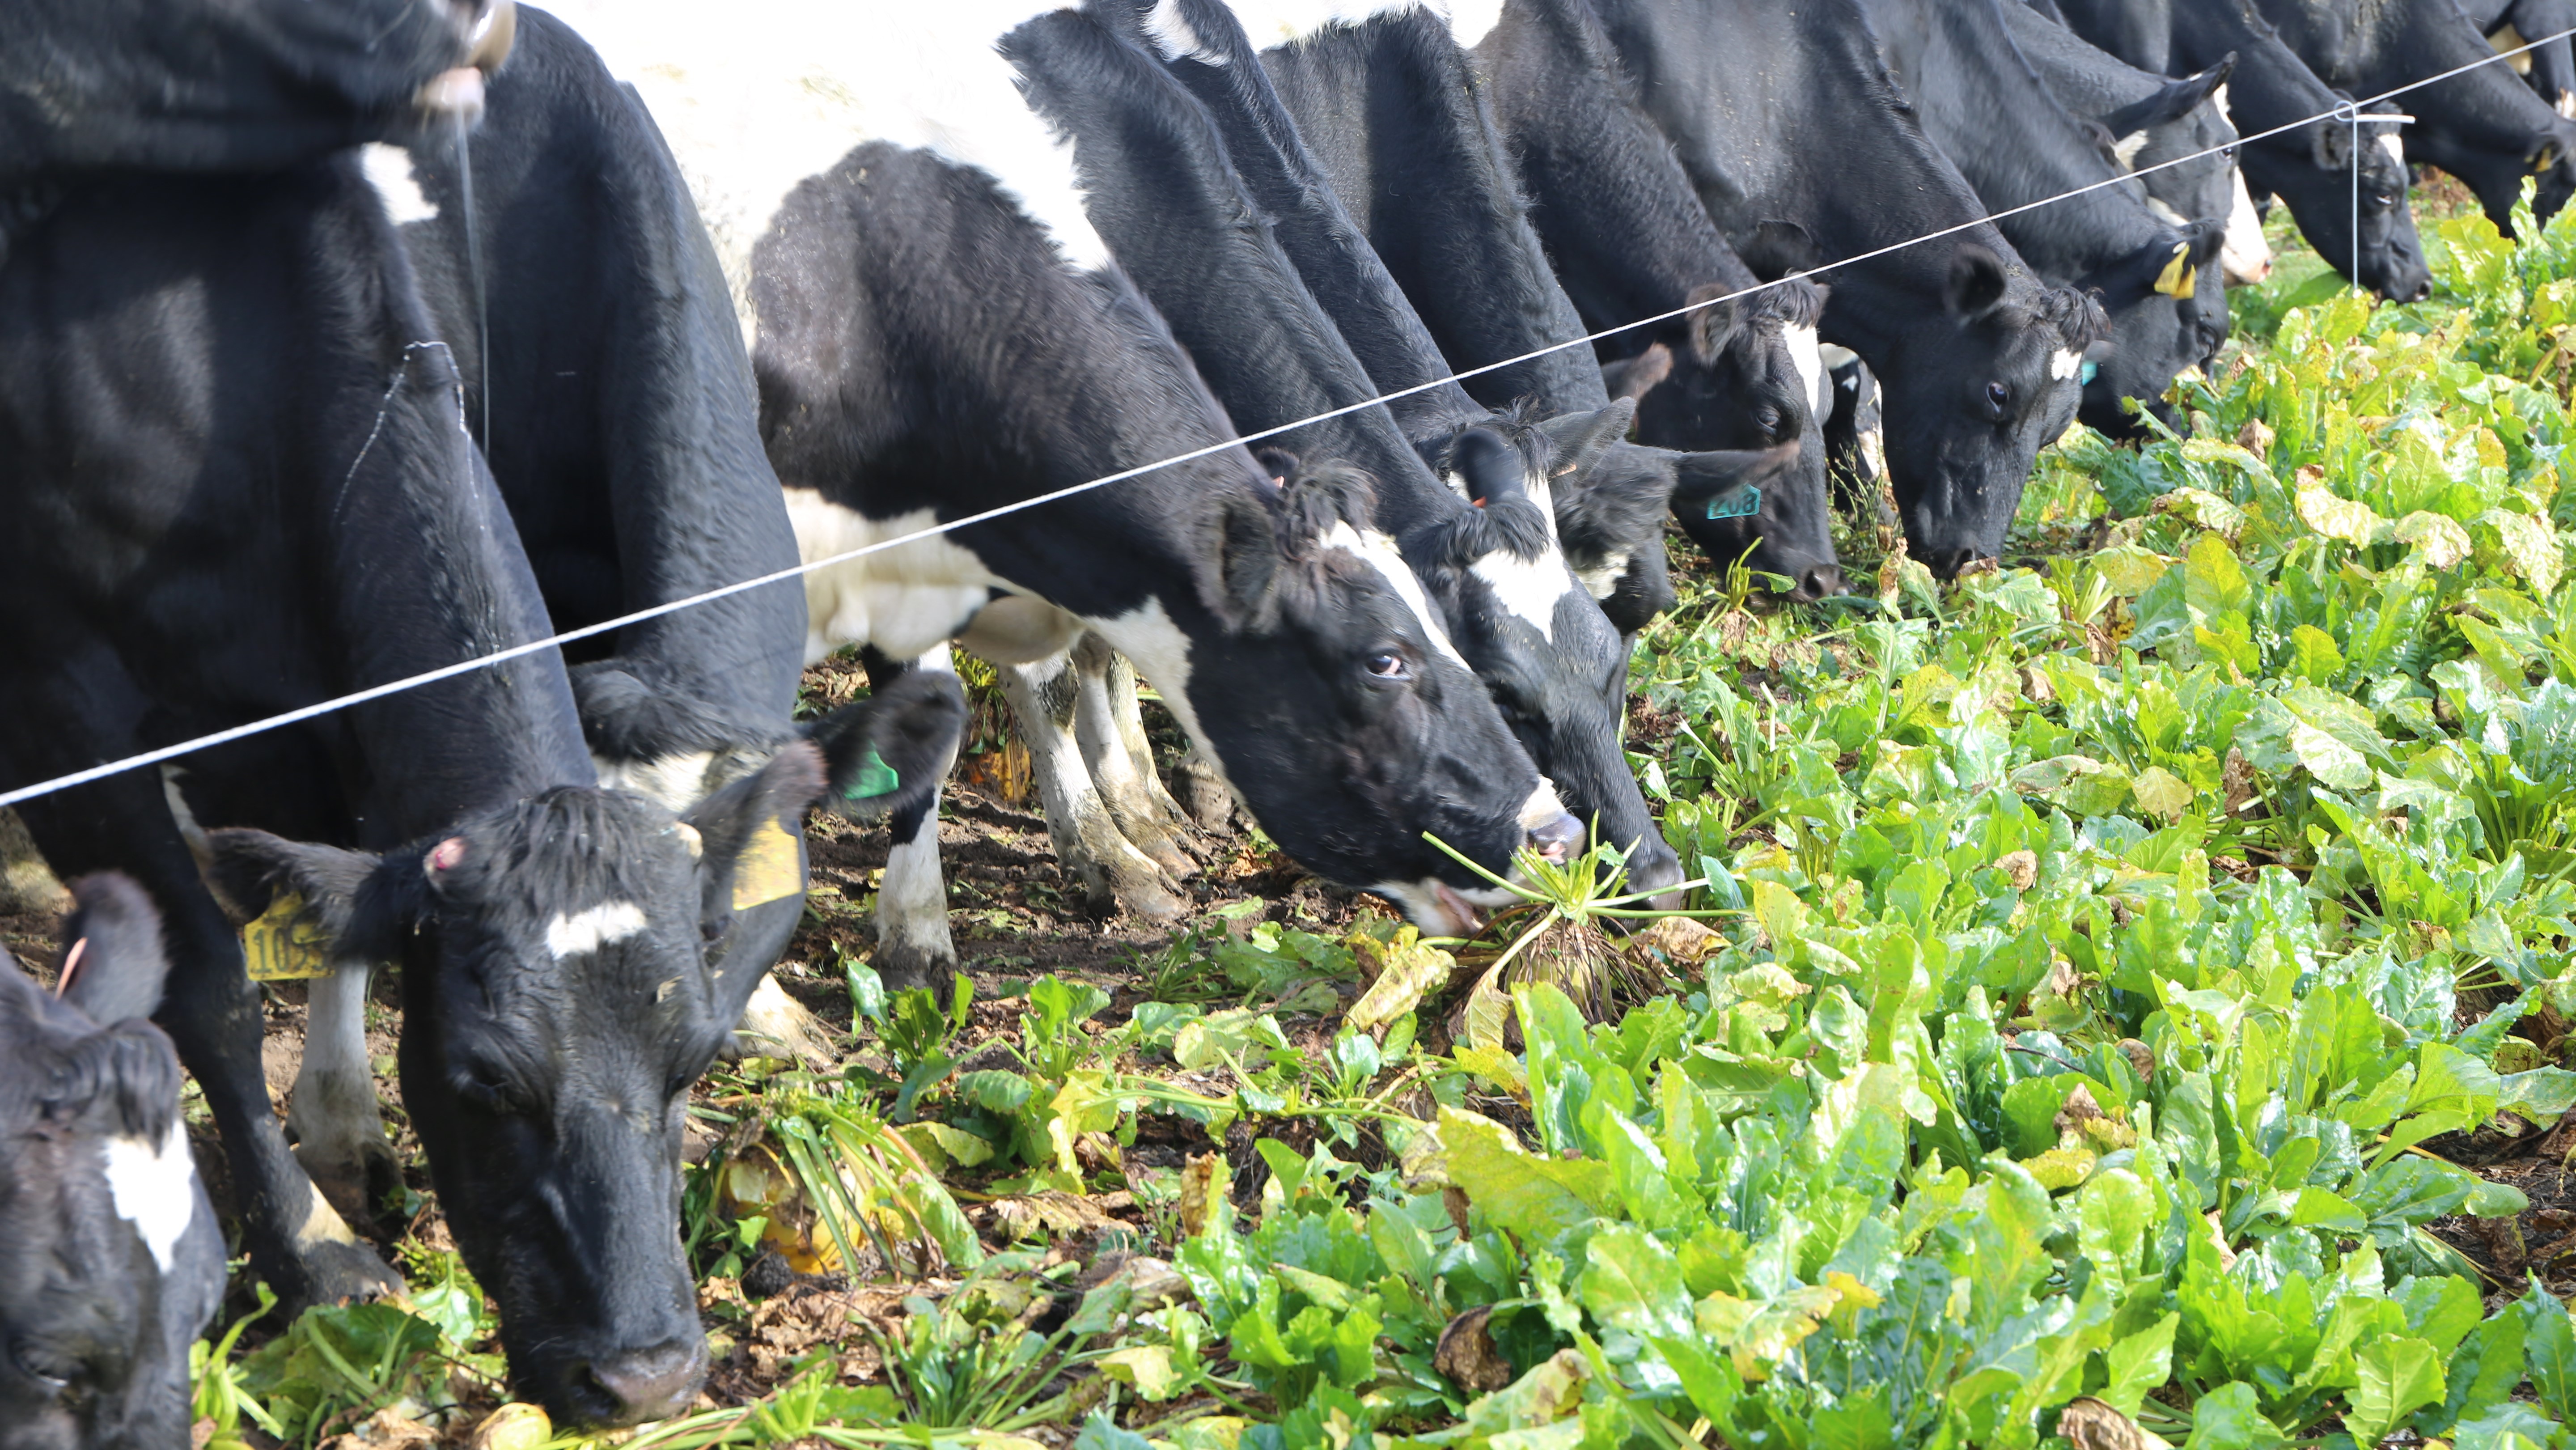 Cows-grazing-fodderbeet.jpg